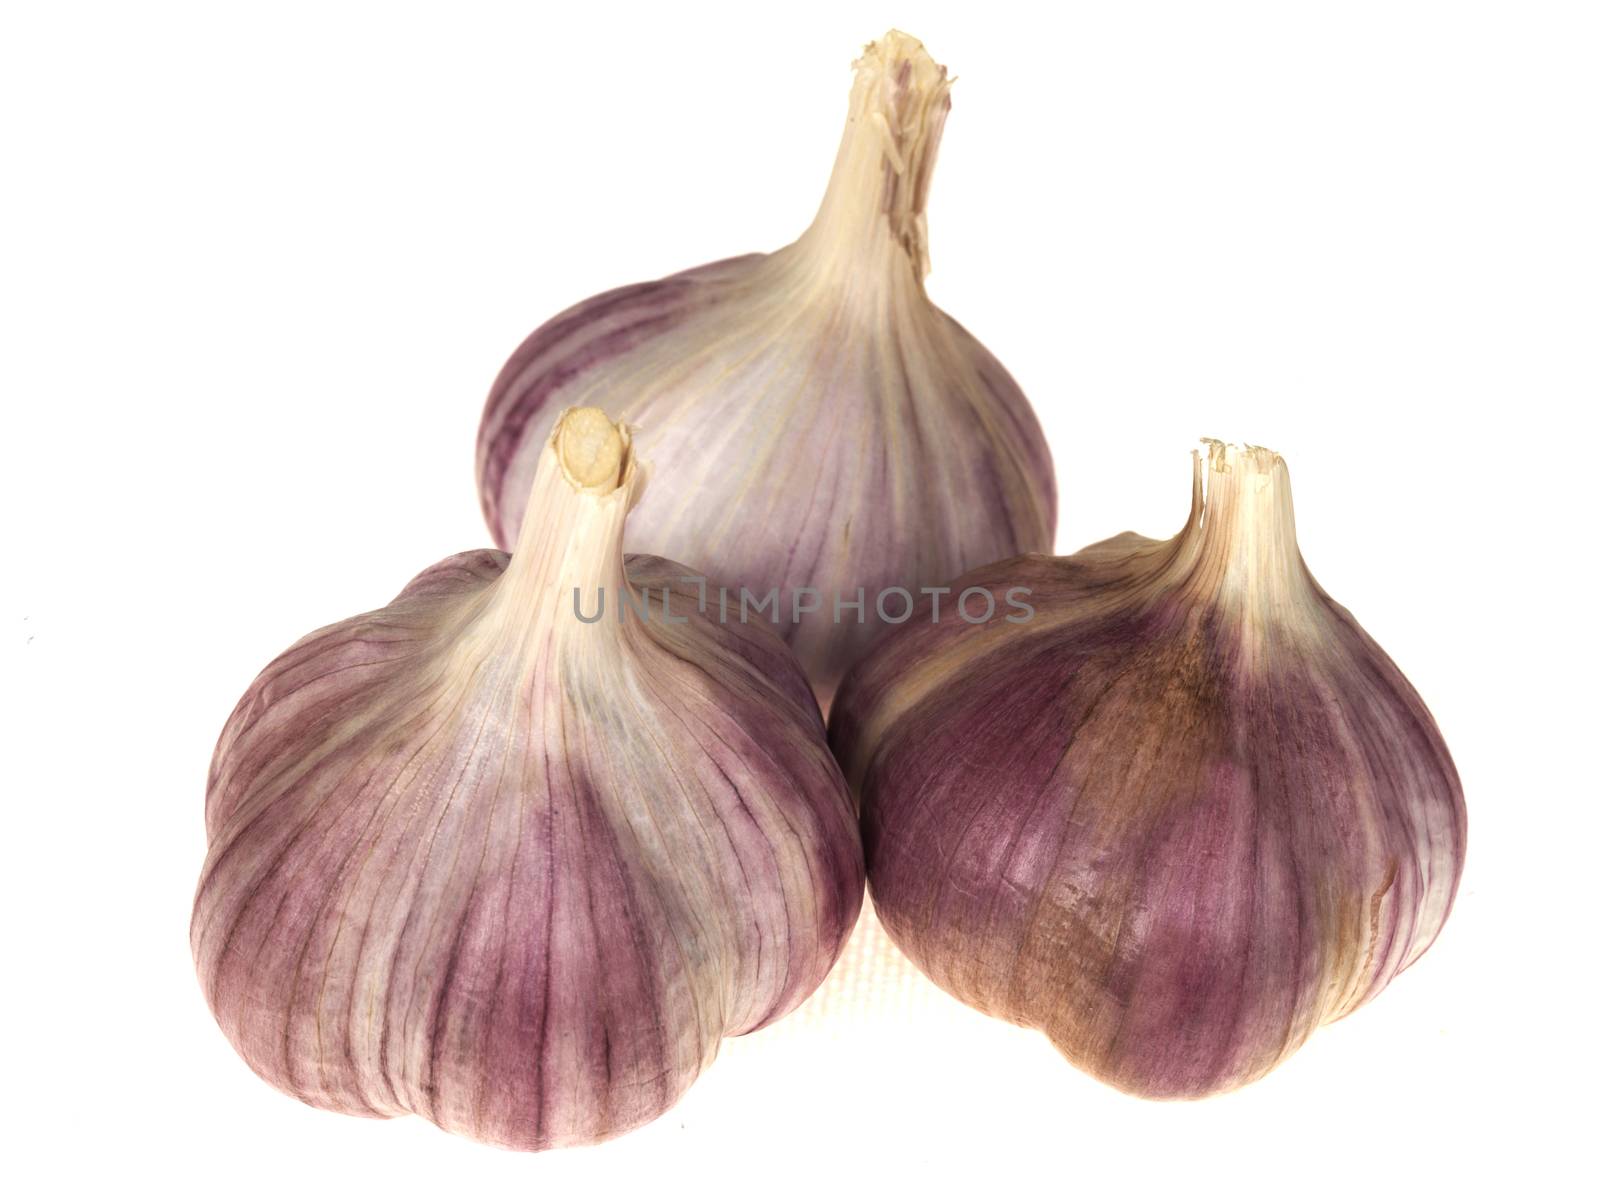 Raw Purple Garlic Bulbs by Whiteboxmedia